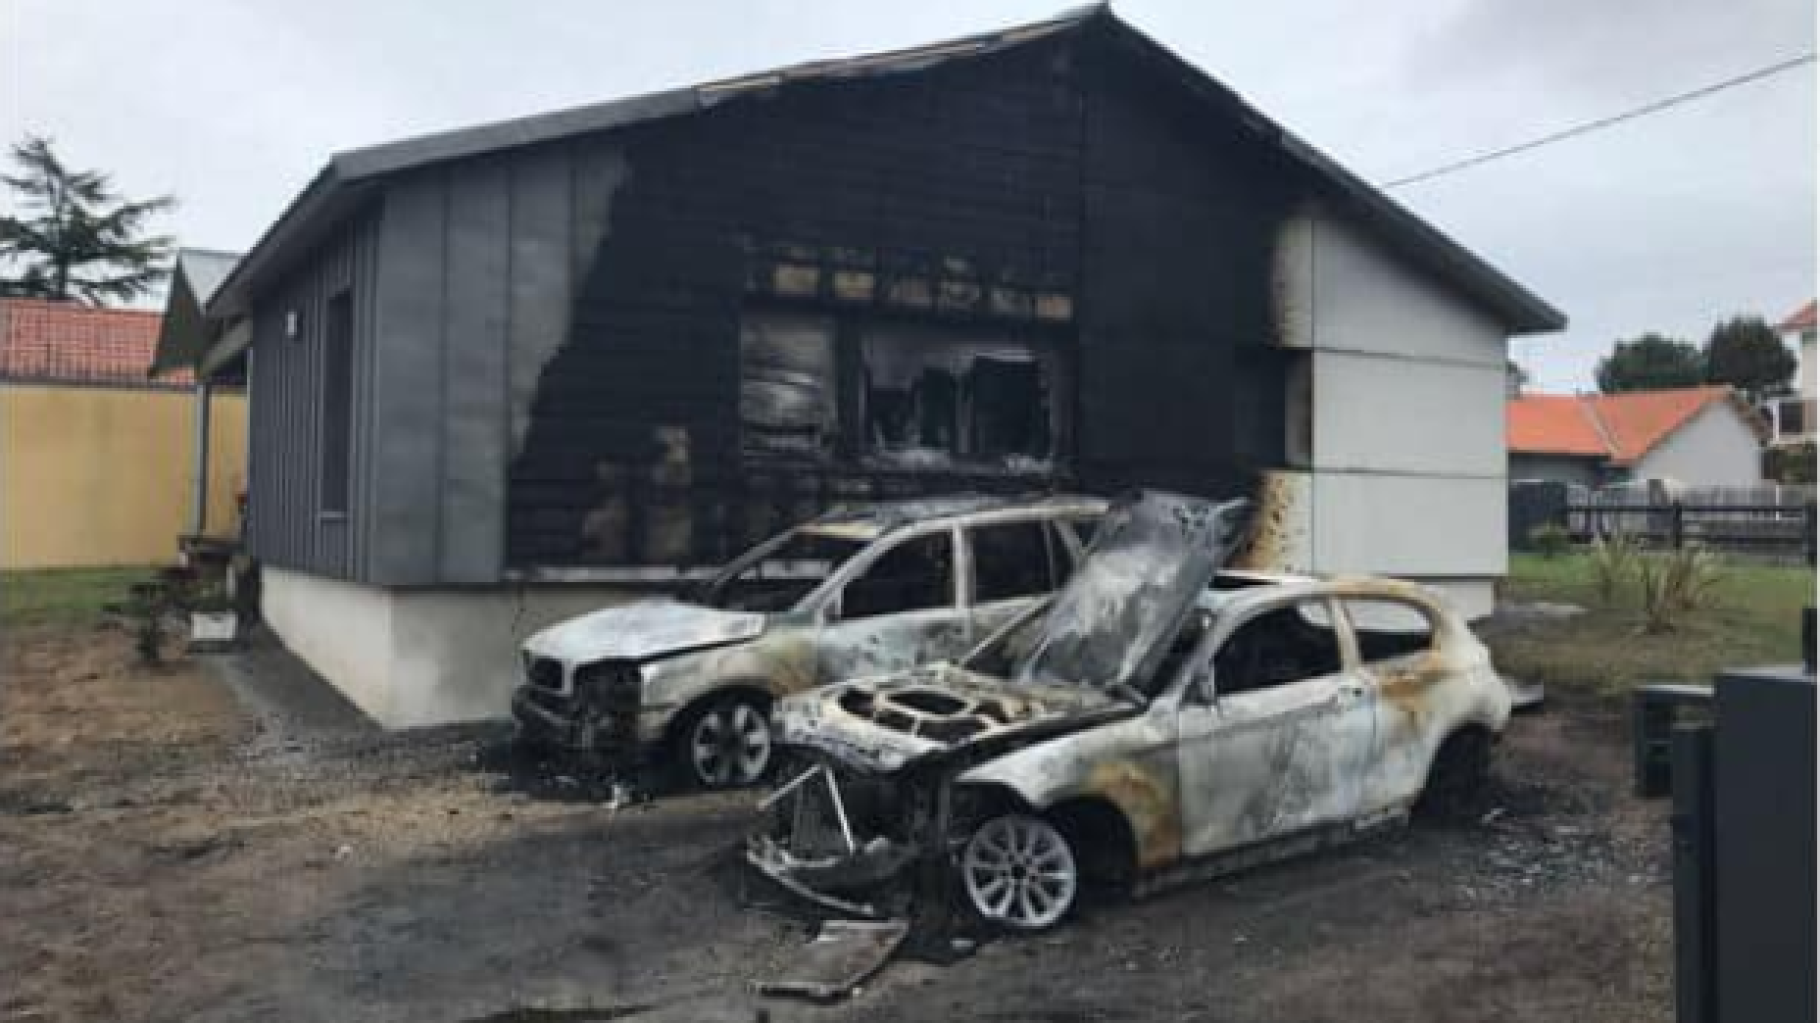 À Saint-Brévin, la maison du maire incendiée après des menaces contre un projet de centre de migrants